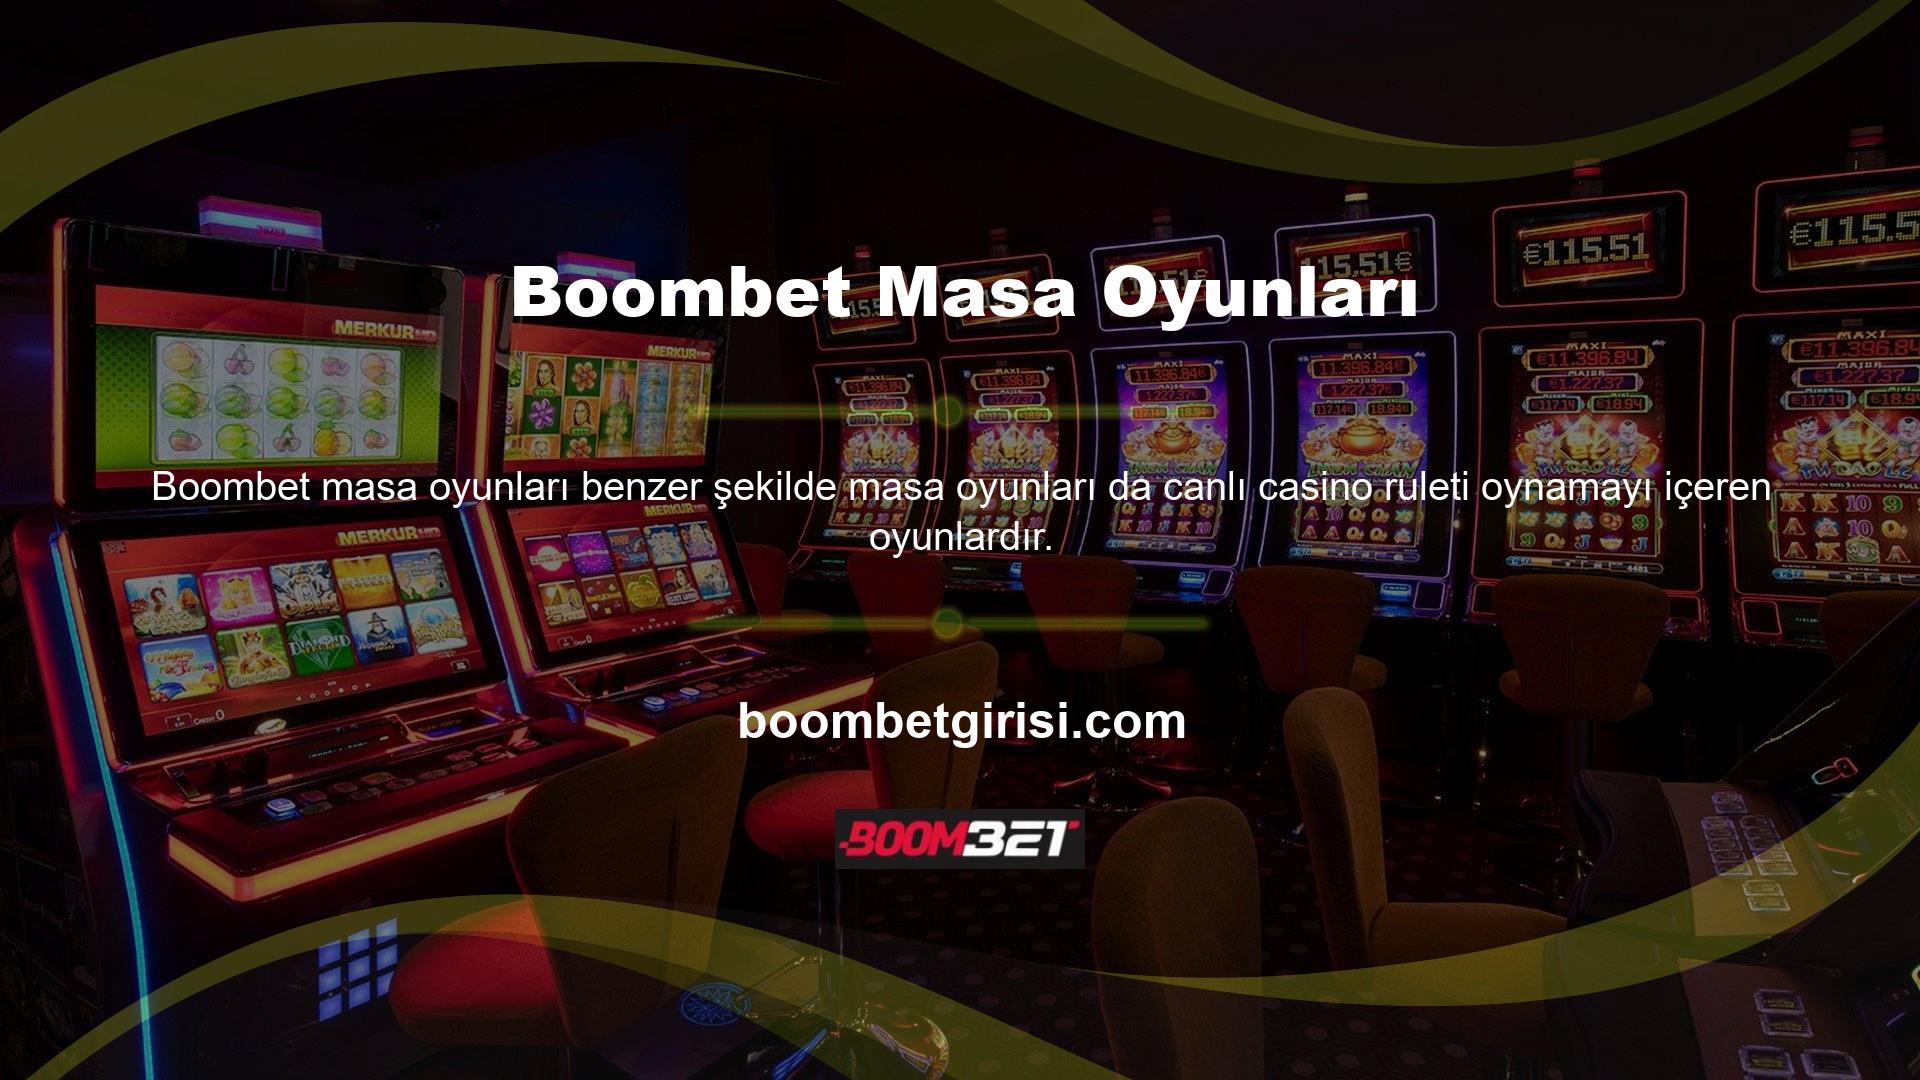 Boombet Canlı Casino'nun uzun bir geçmişi var